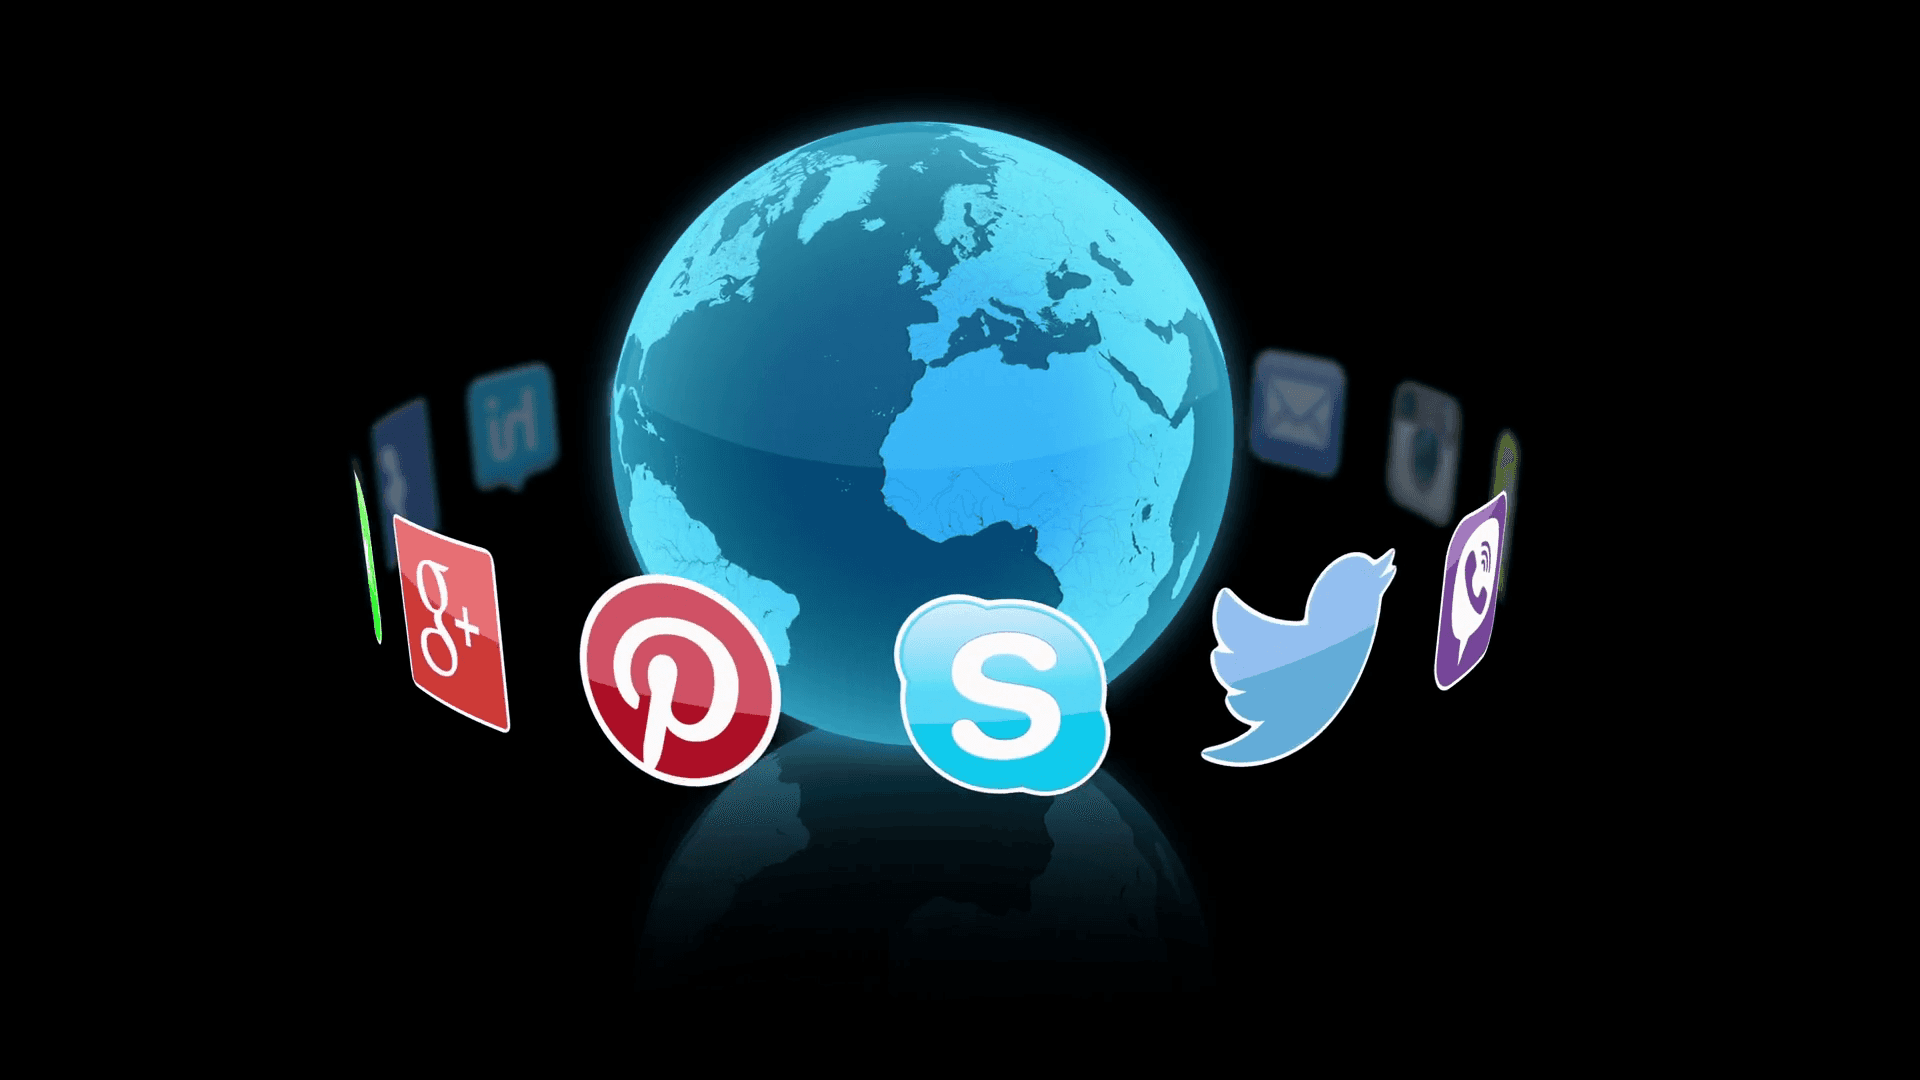 Solidifying Connections through Social Media